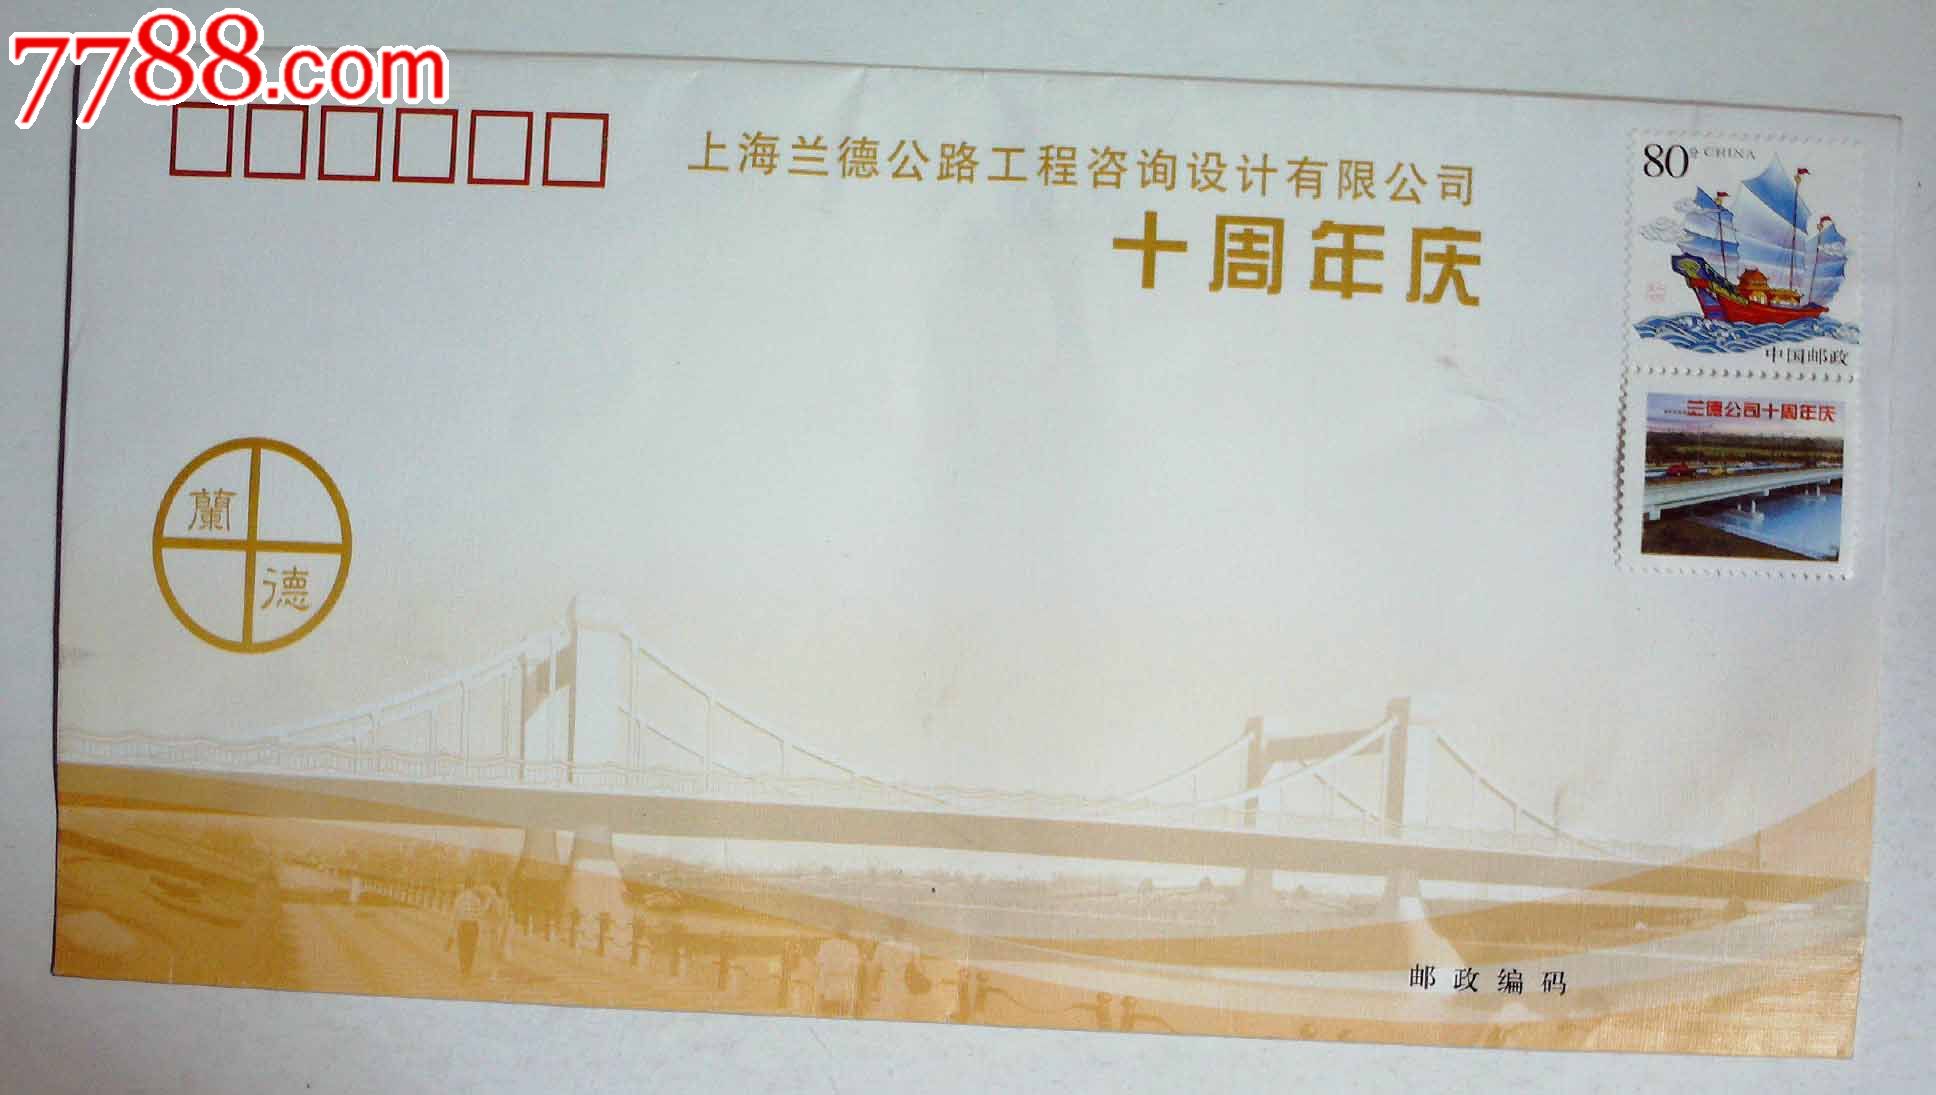 上海兰德公路工程咨询设计有限公司十周年庆,